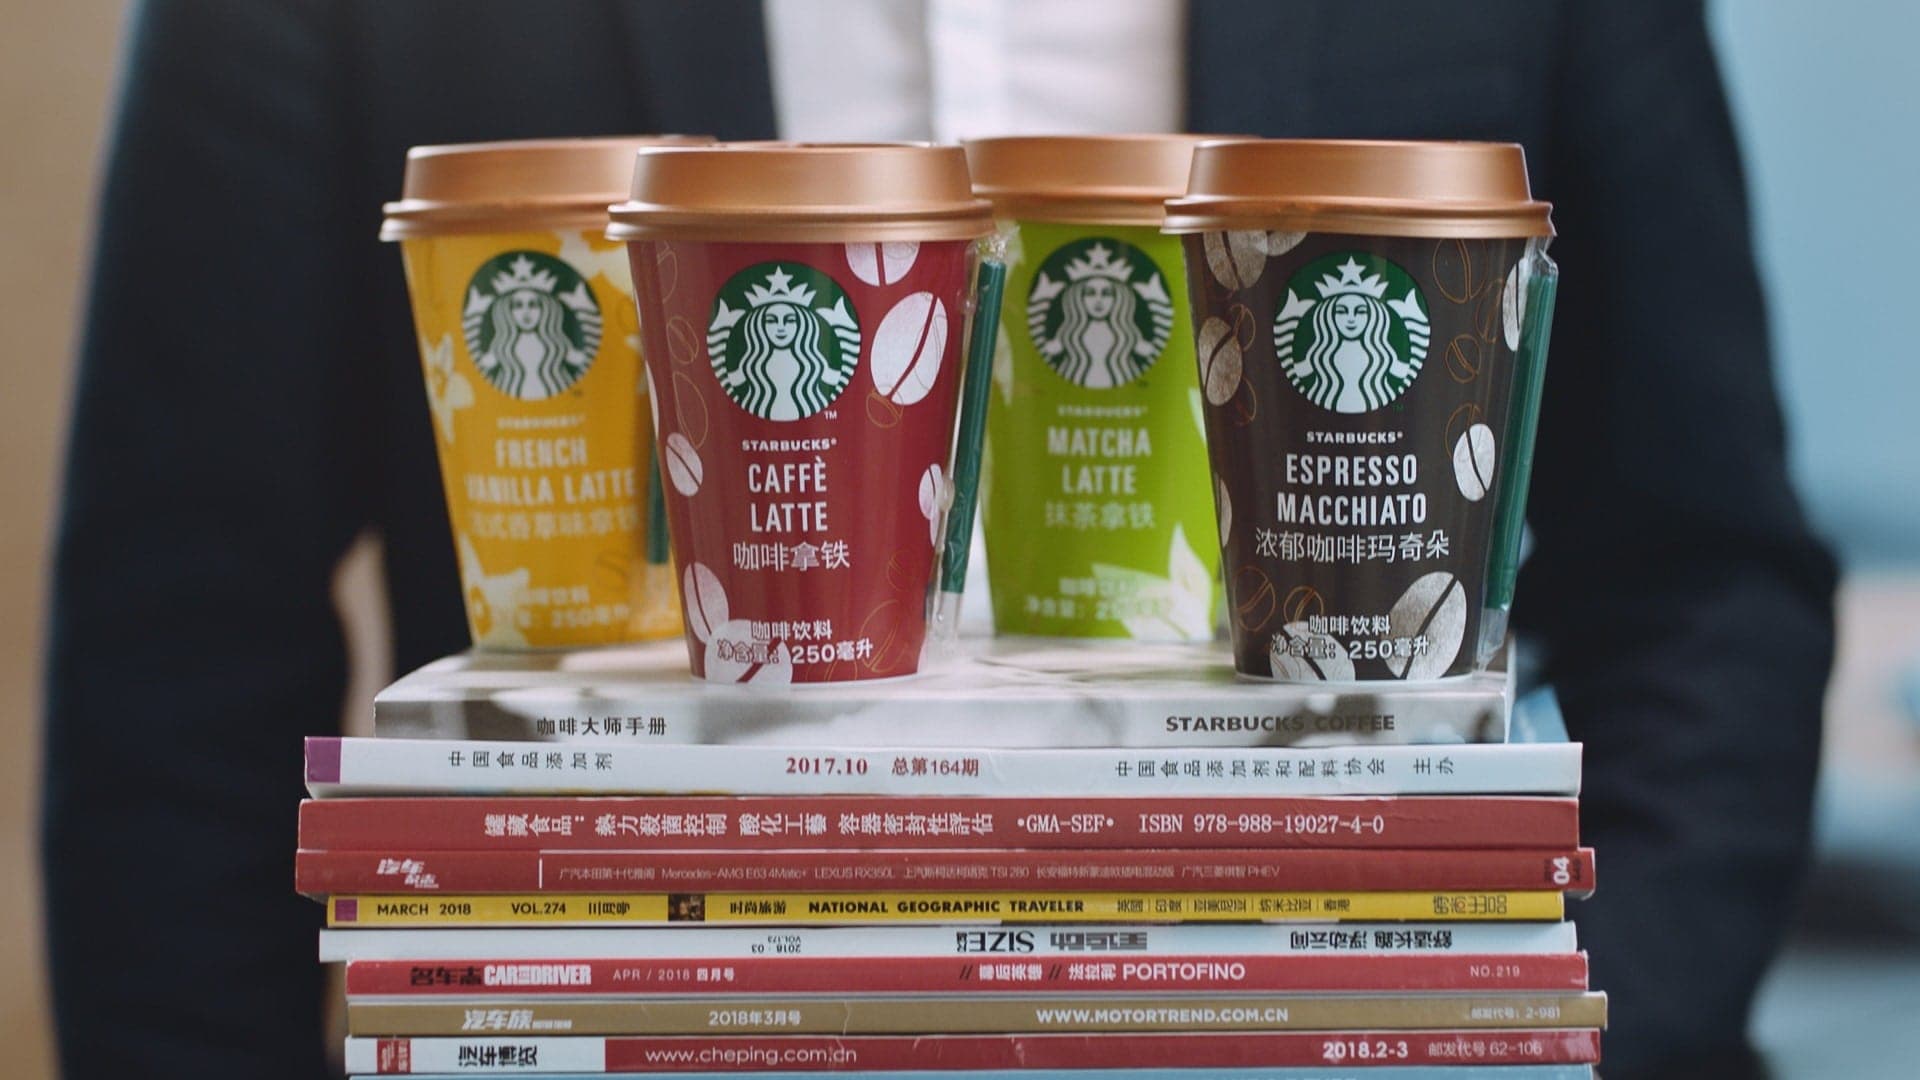 星巴克将于6月为中国消费者推出全新四款口味的Chilled Cup冷藏即饮饮品